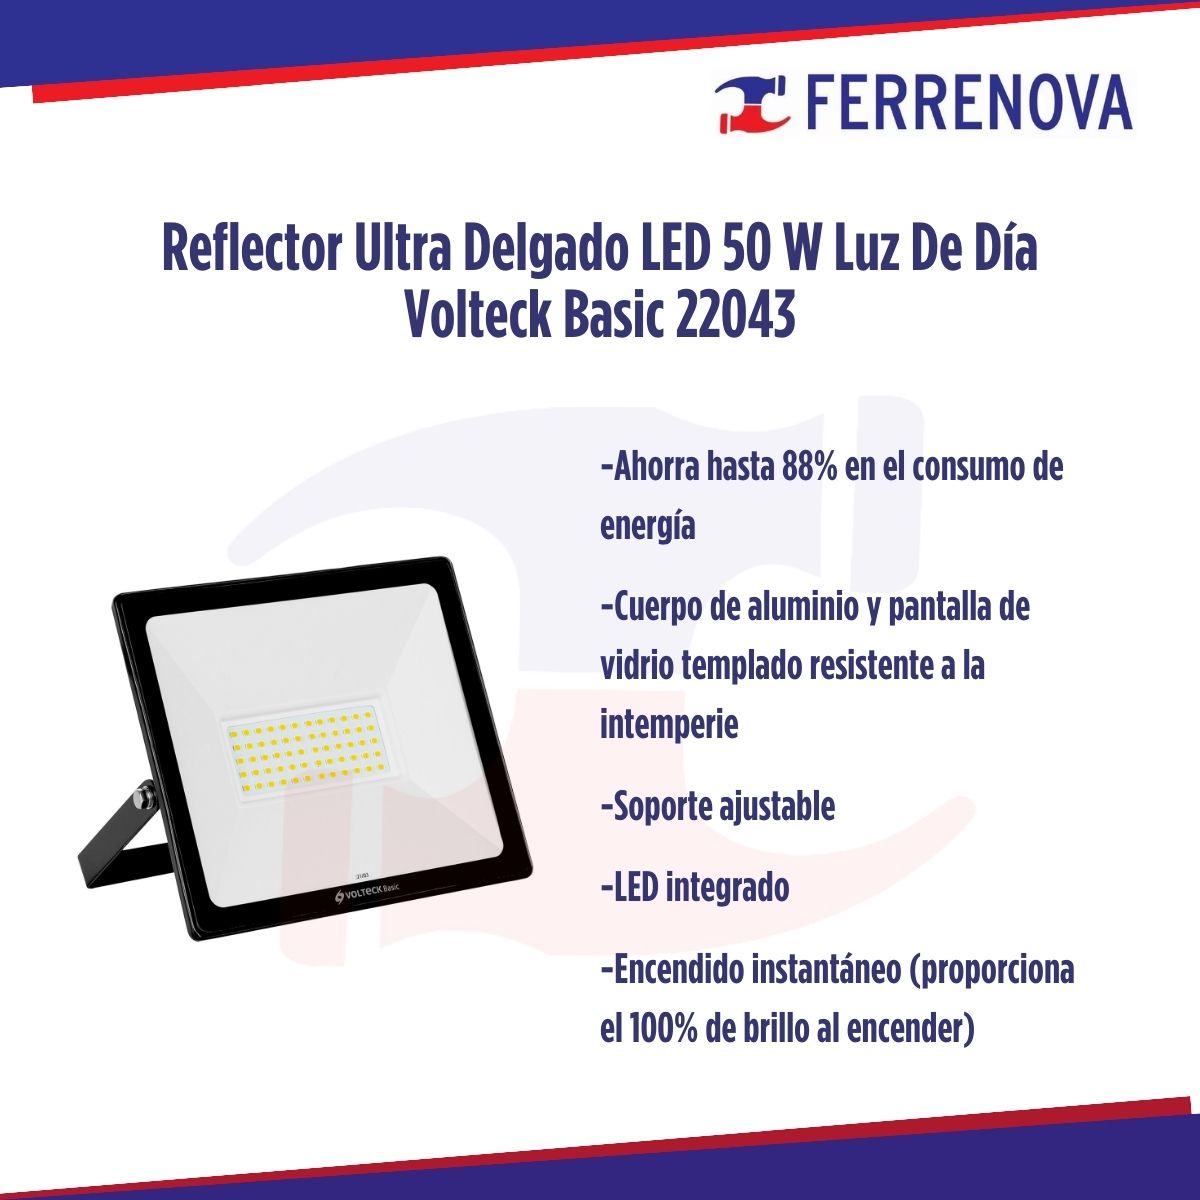 Reflector Ultra Delgado LED 50 W Luz De Día Volteck Basic 22043